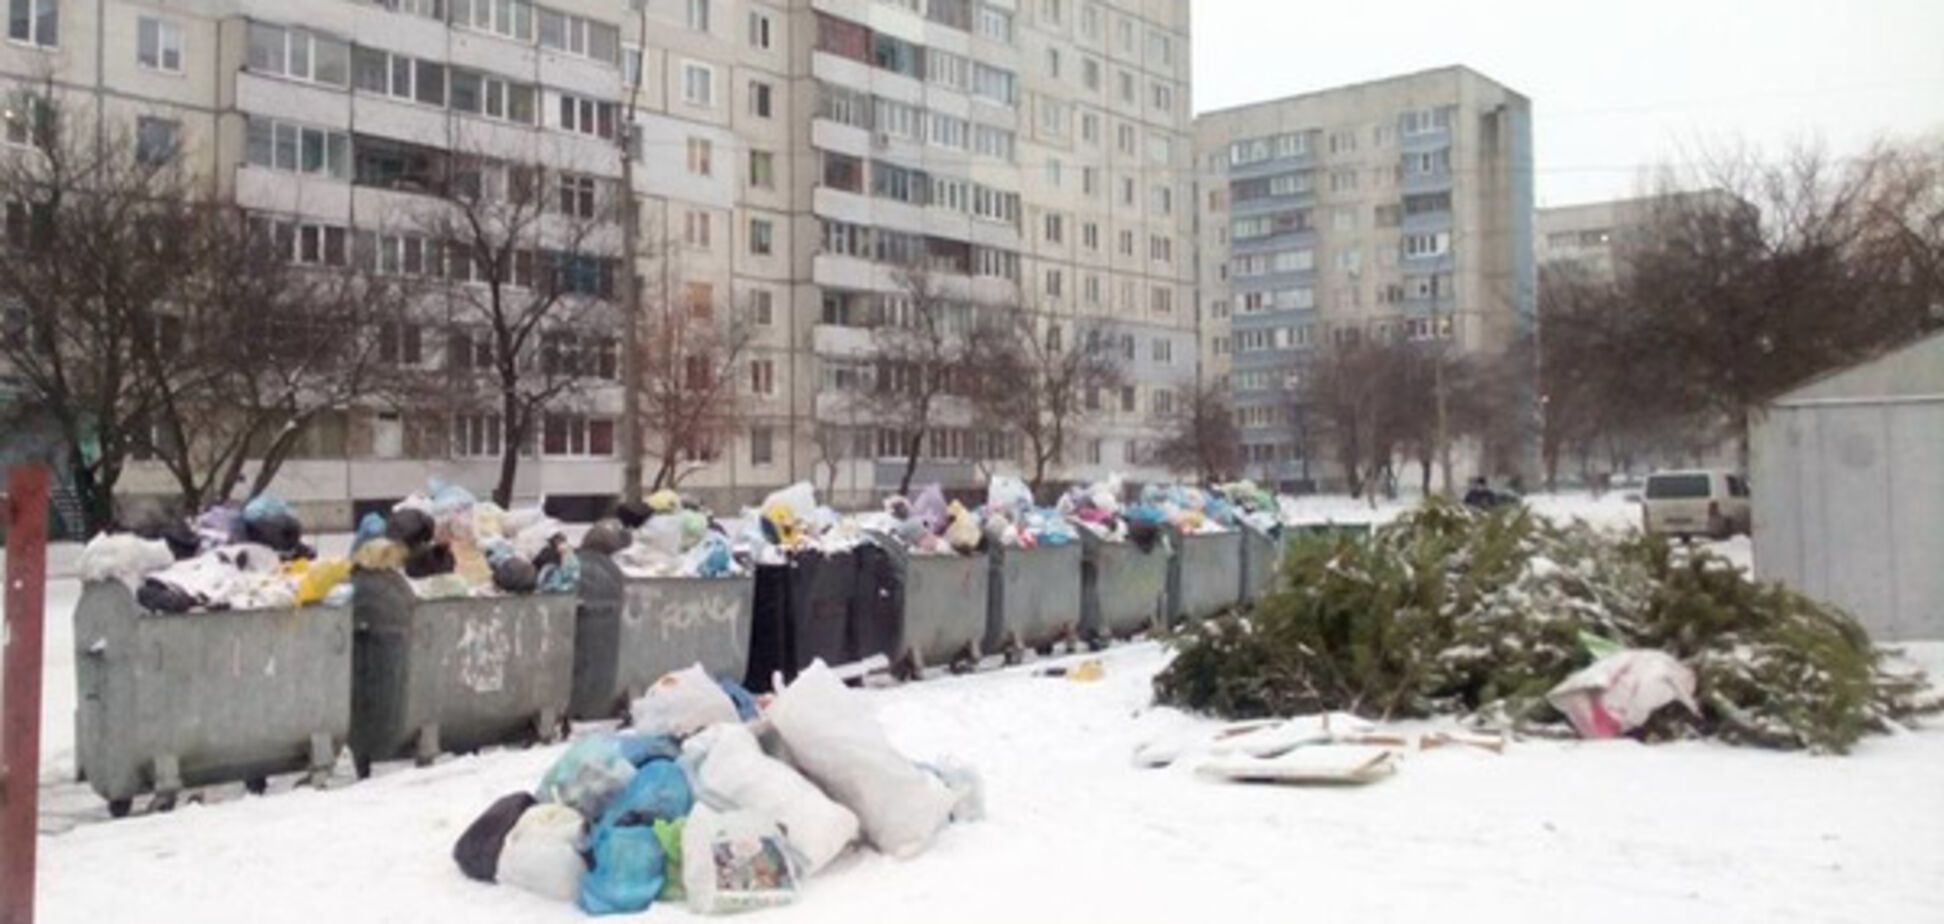 Місто перетворилося на смітник: у Черкасах стався сміттєвий колапс. Фотофакт